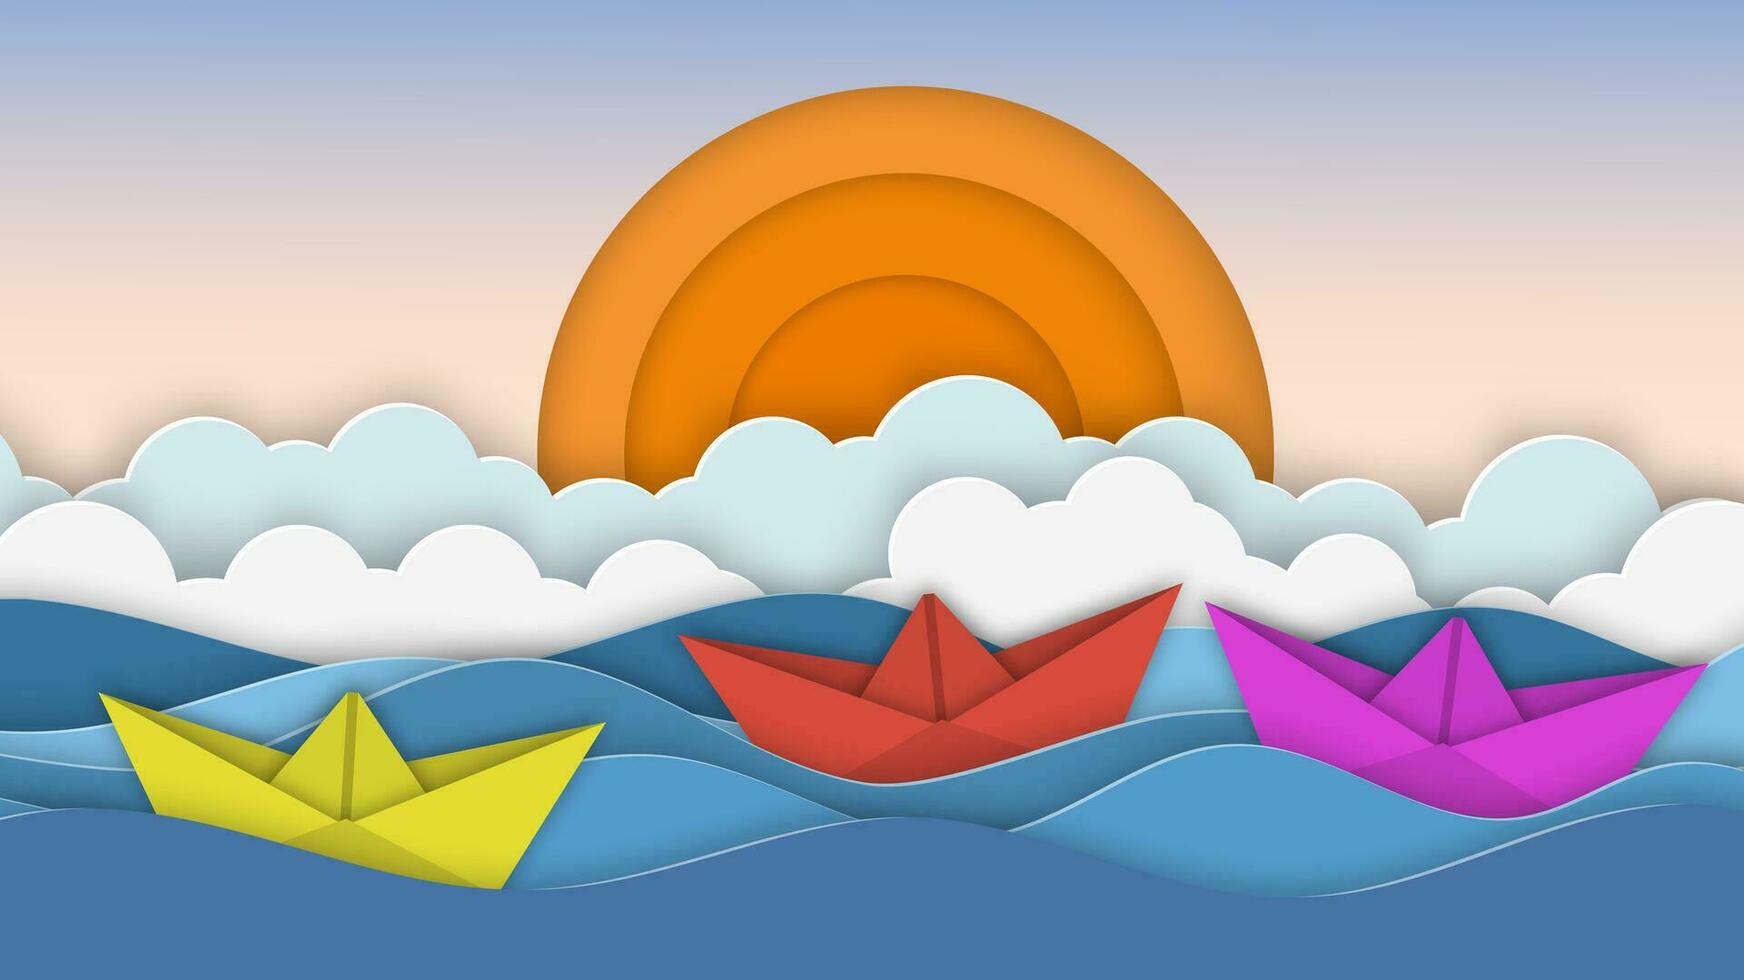 barca a vela nel il mare. sole, nuvole. carta tagliare illustrazione per pubblicità, viaggiare, turismo, crociere, viaggio agenzia vettore illustrazione